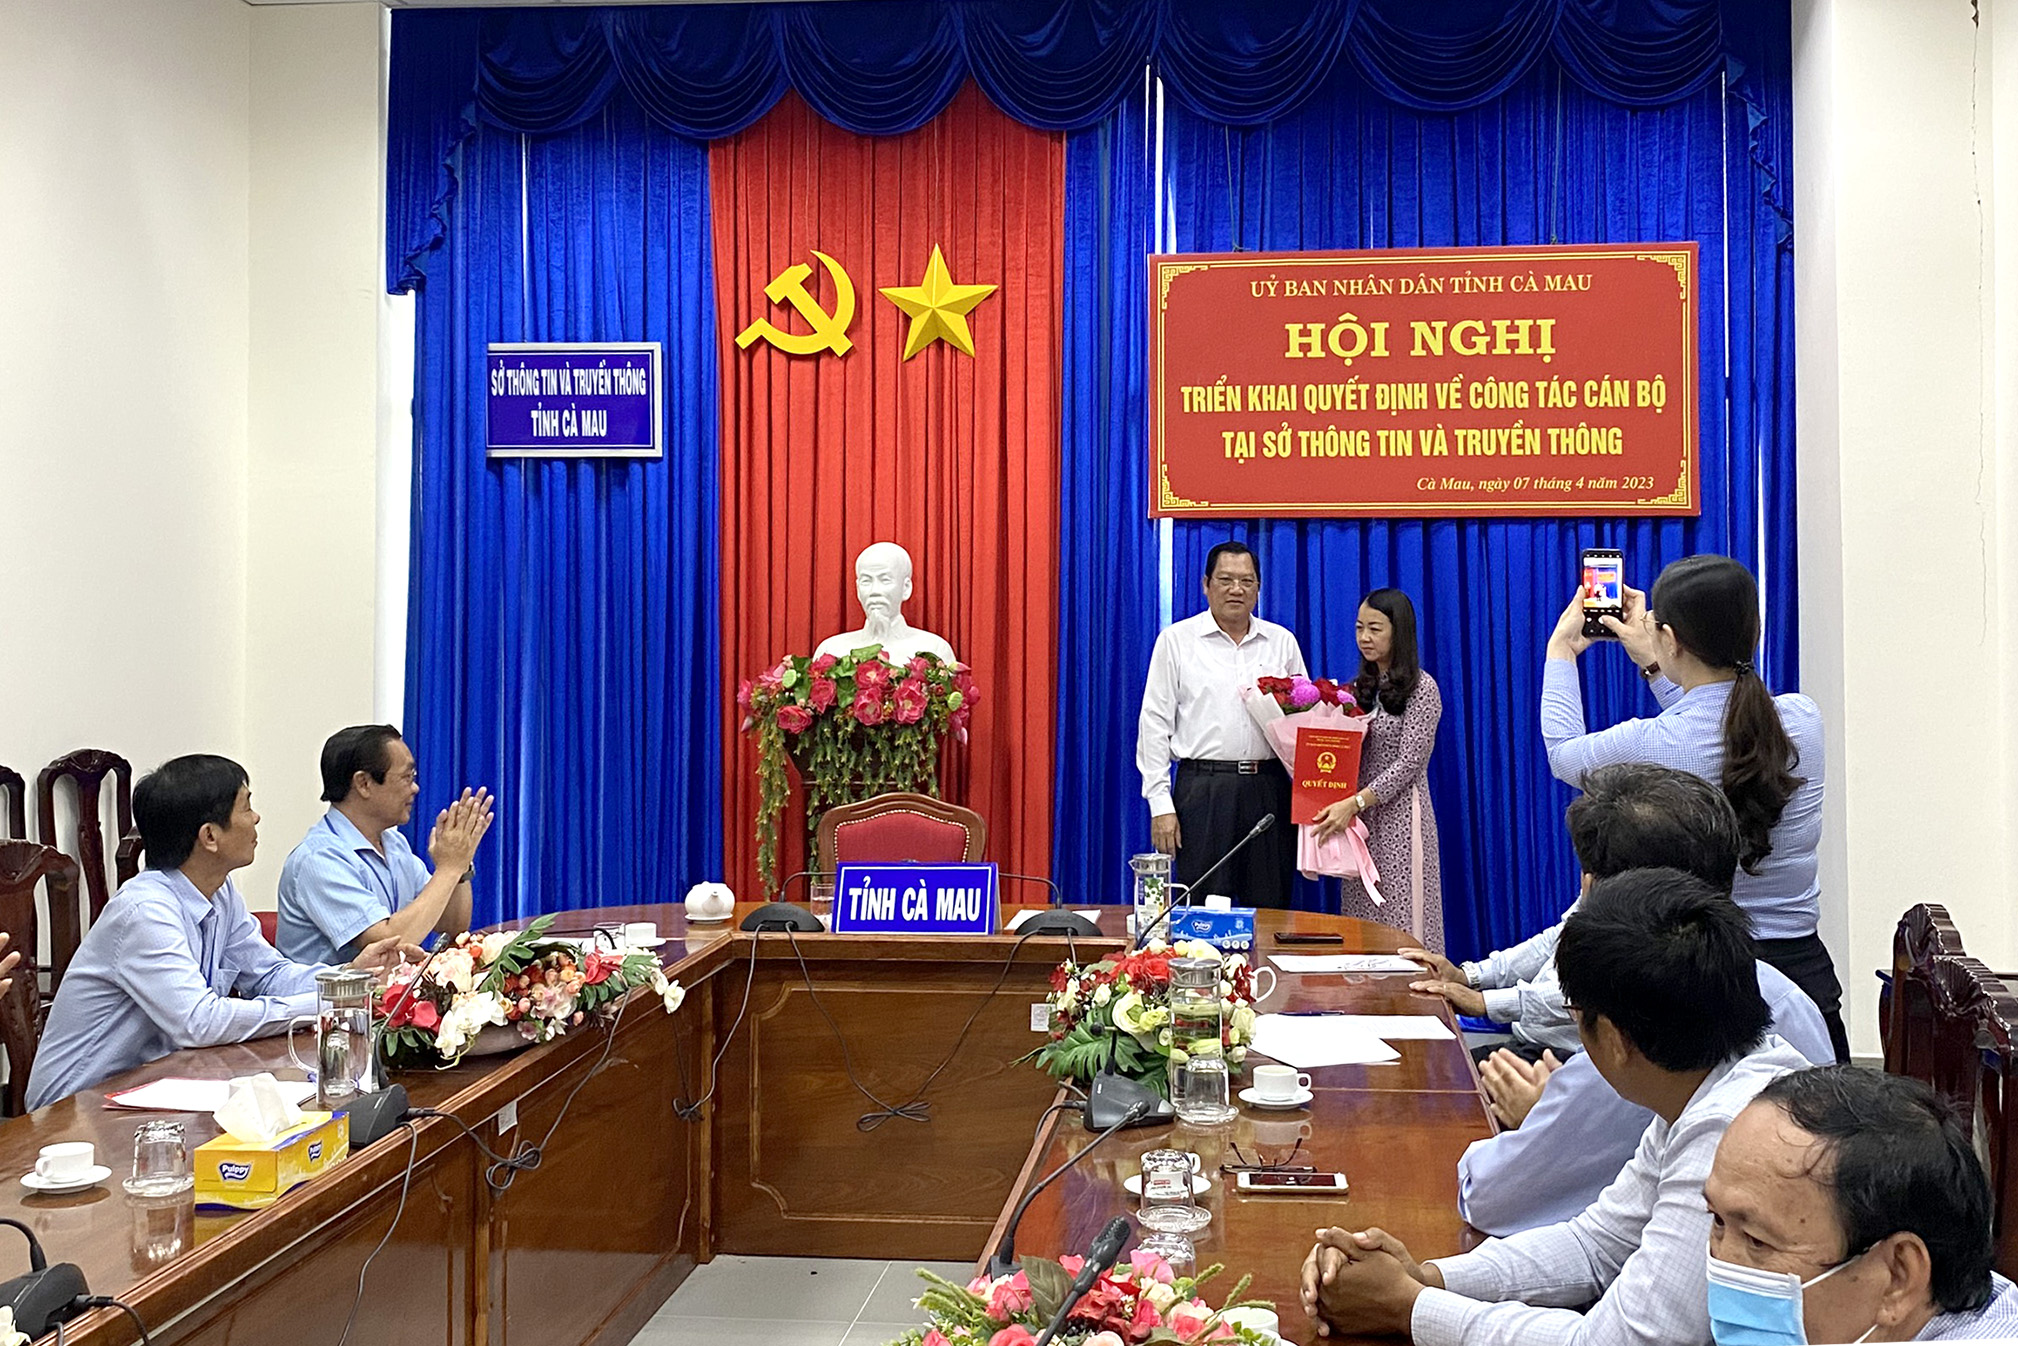 Đồng chí Lâm Văn Bi, Phó Chủ tịch UBND tỉnh trao Quyết định cho đồng chí Trần Thị Cẩm Hằng.